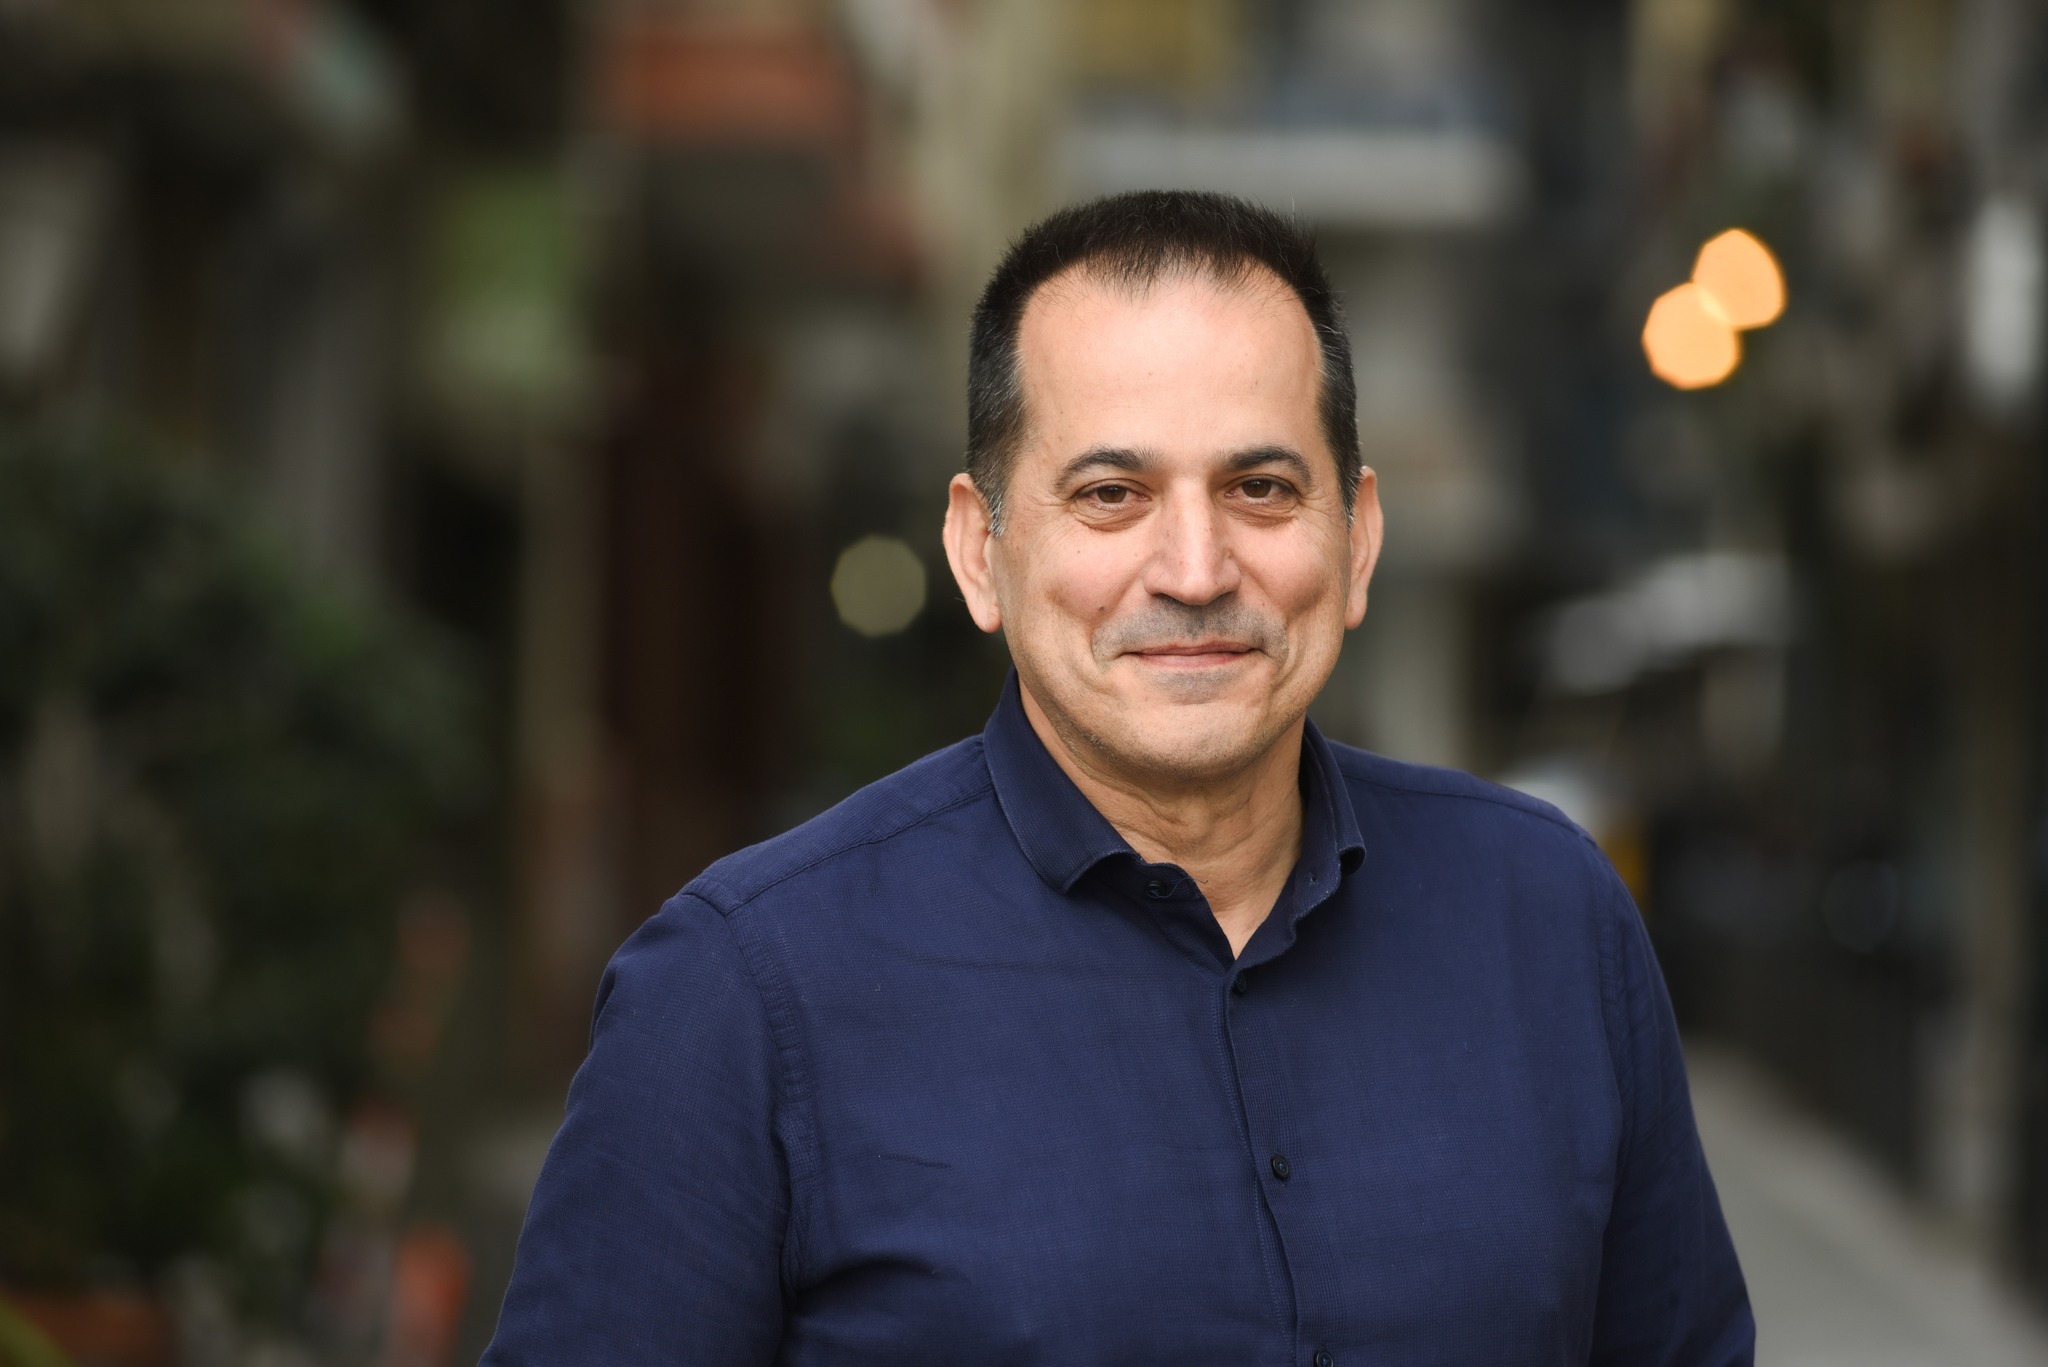 Σπ. Πέγκας, υποψήφιος δήμαρχος Θεσσαλονίκης: «Είμαστε η δύναμη της αλλαγής και της προόδου»